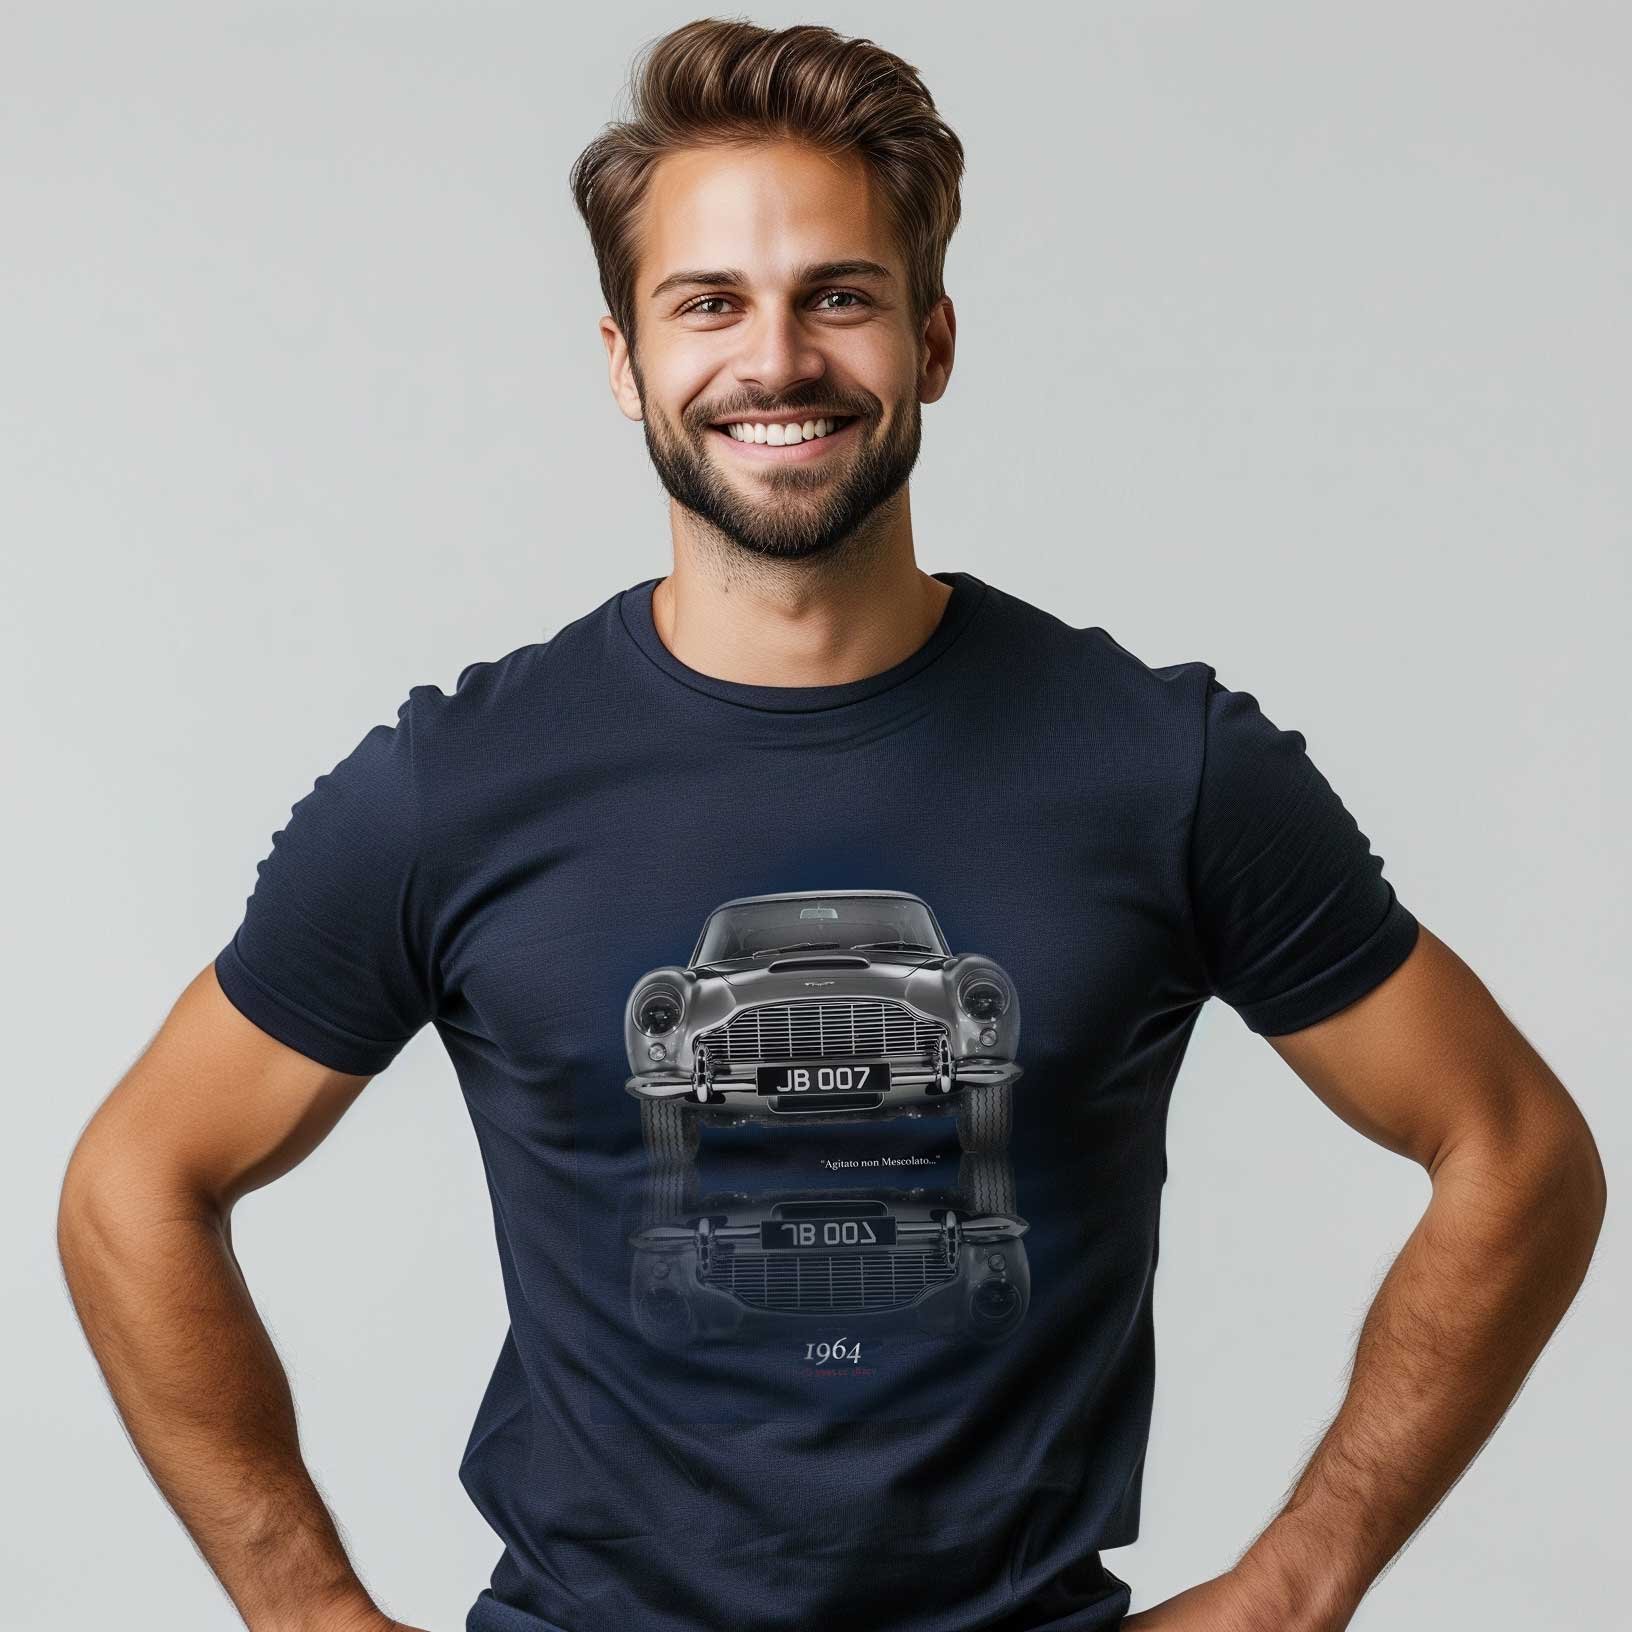 Man smiling wearing vintage car t-shirt.